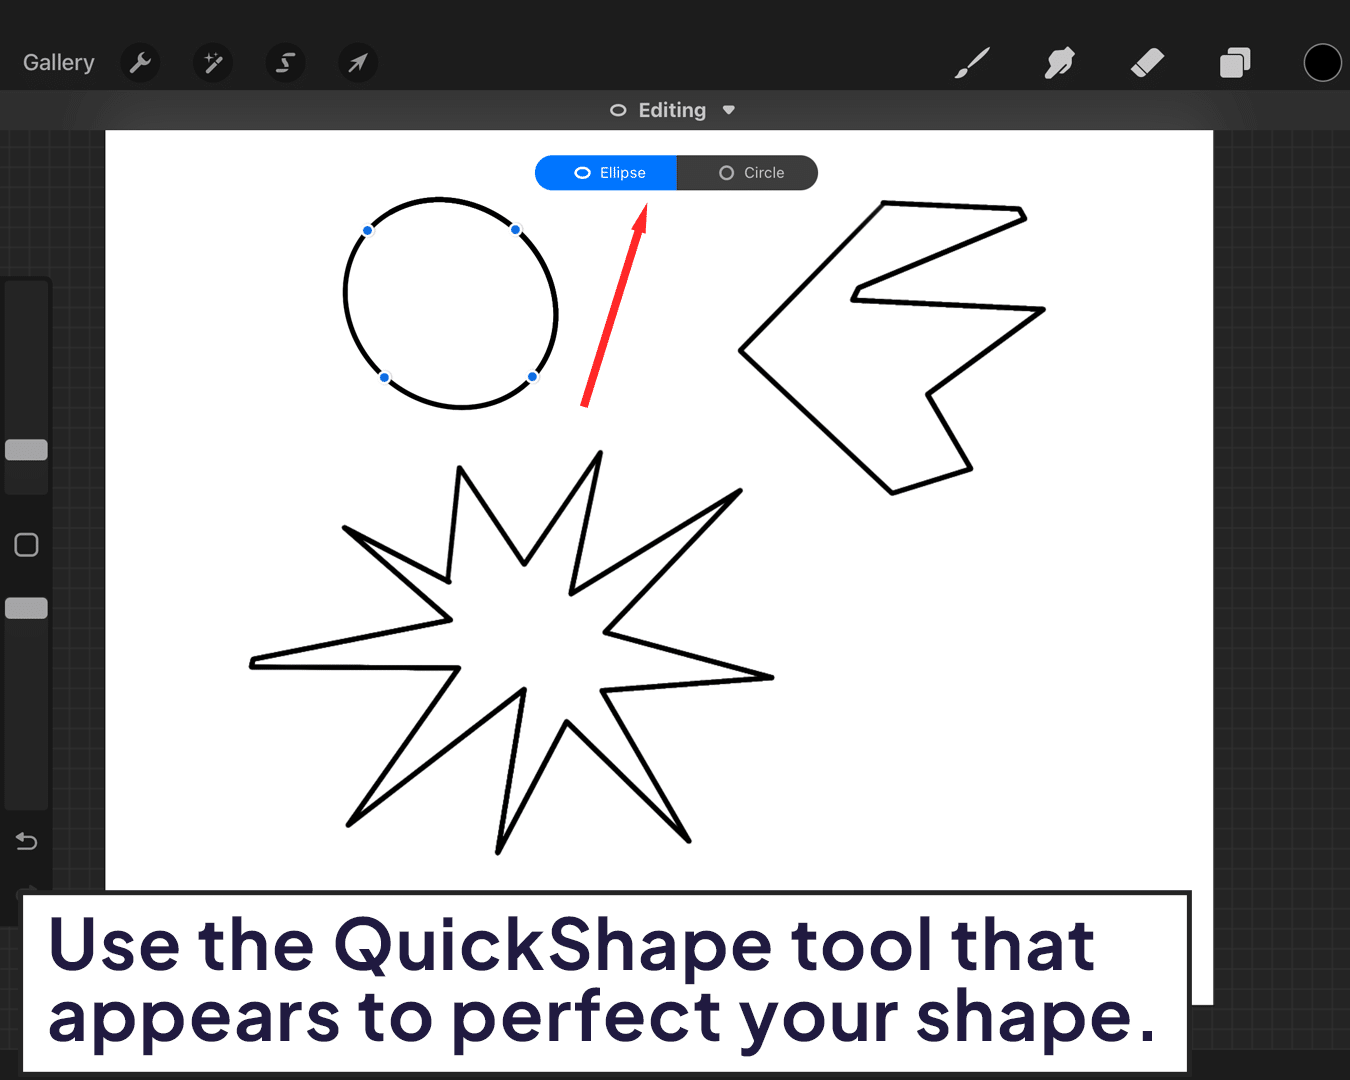 Using QuickShape tools